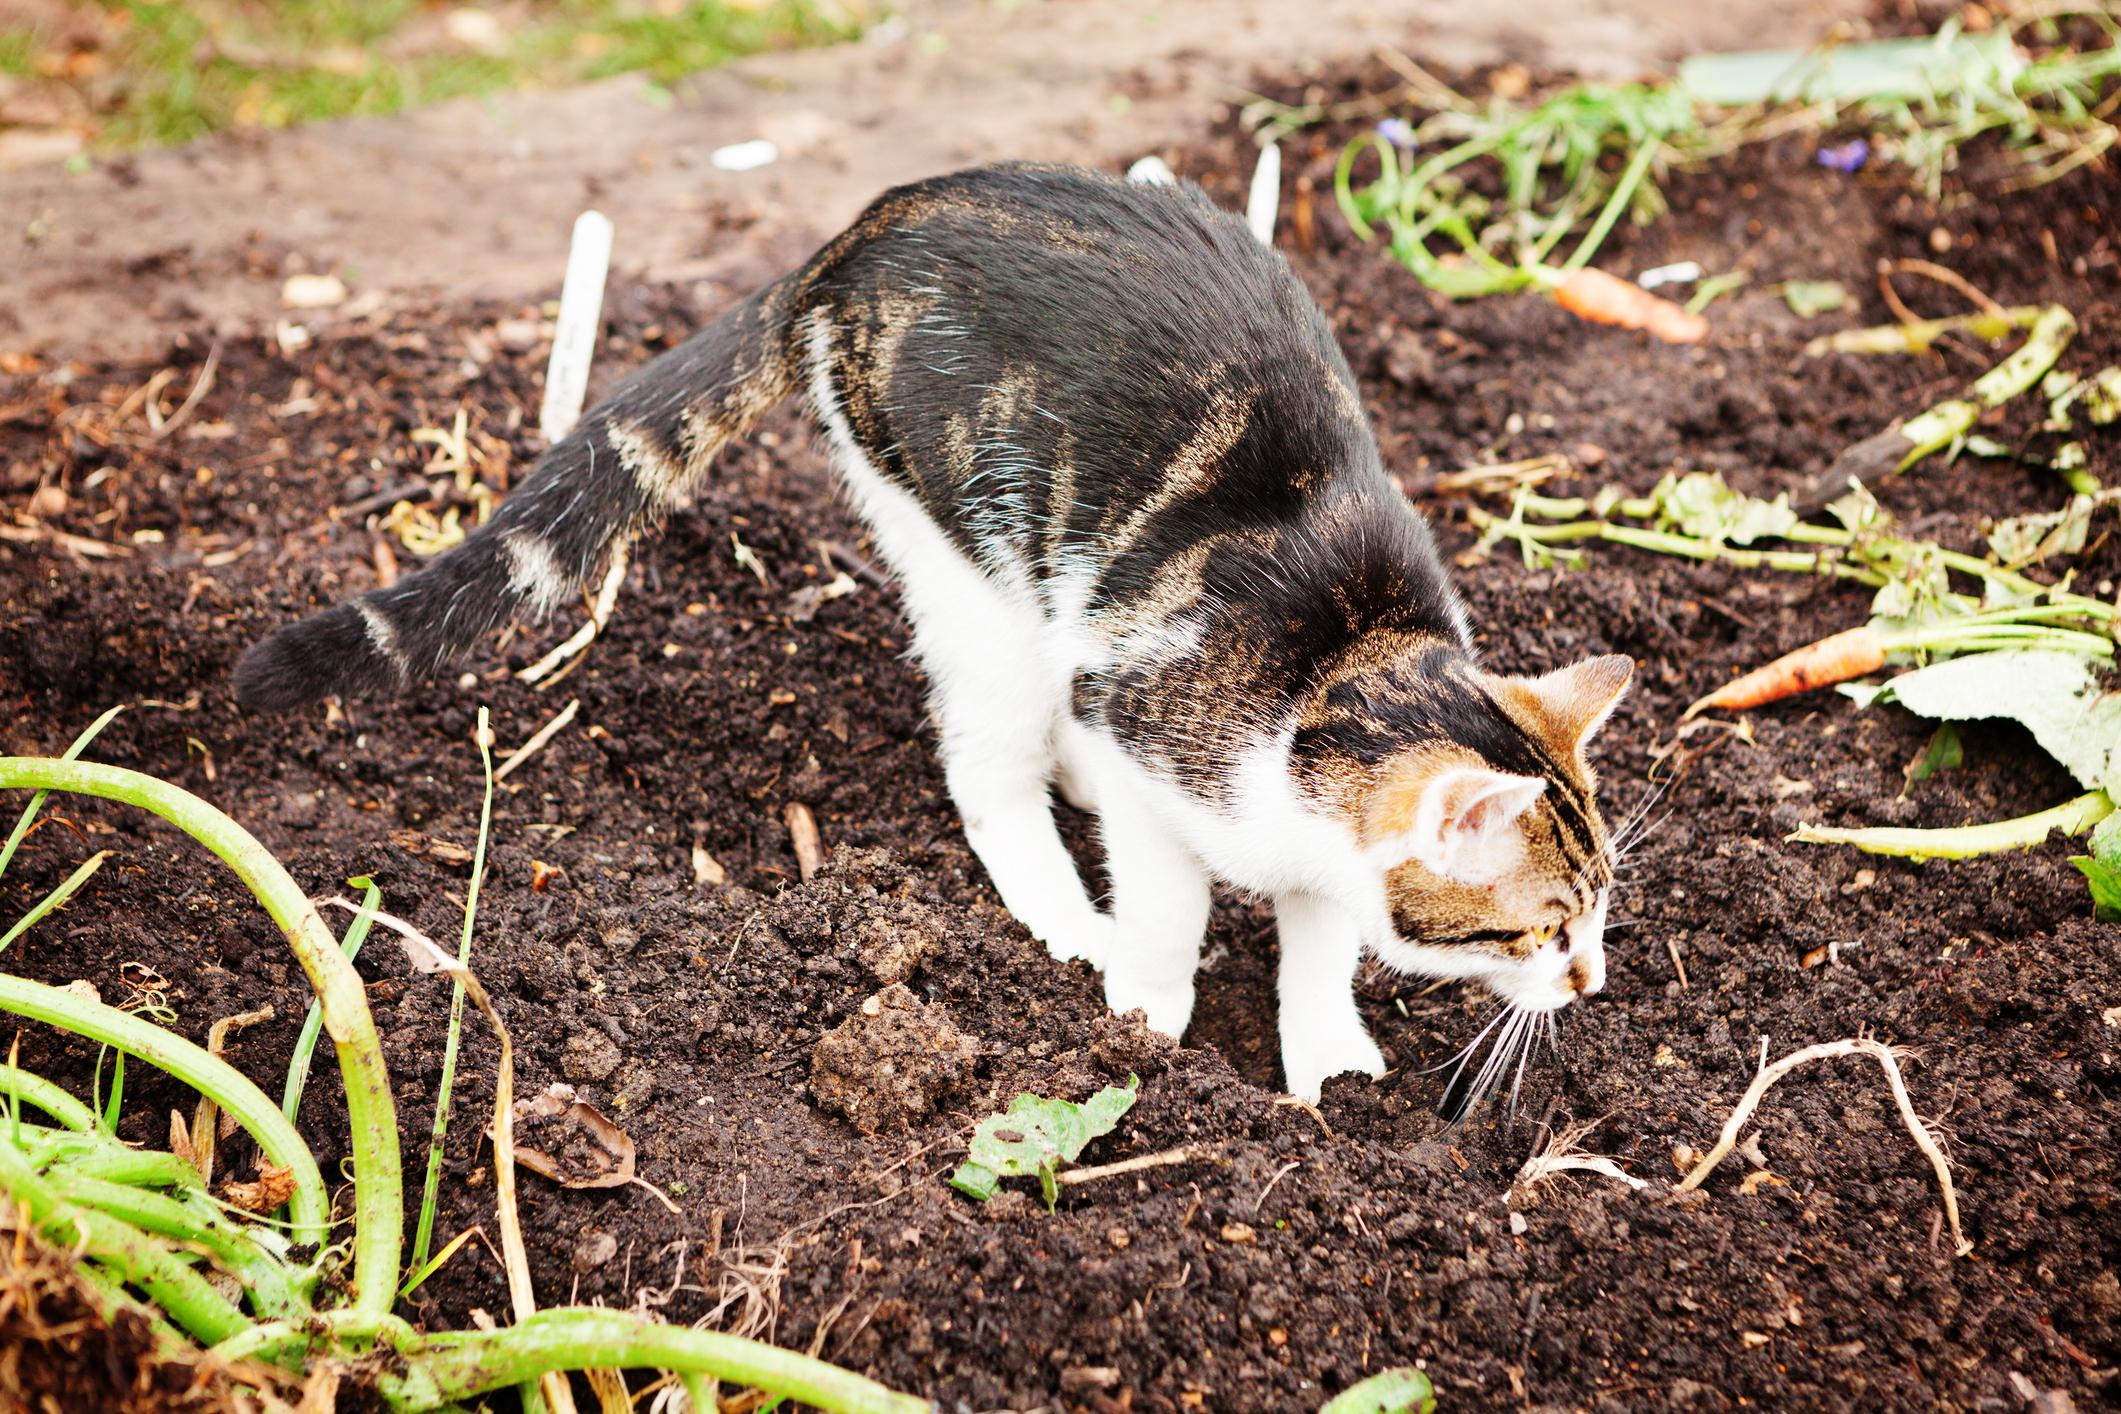  Katzenkot im Garten ist ein Ärgernis und kann die Gesundheit gefährden.